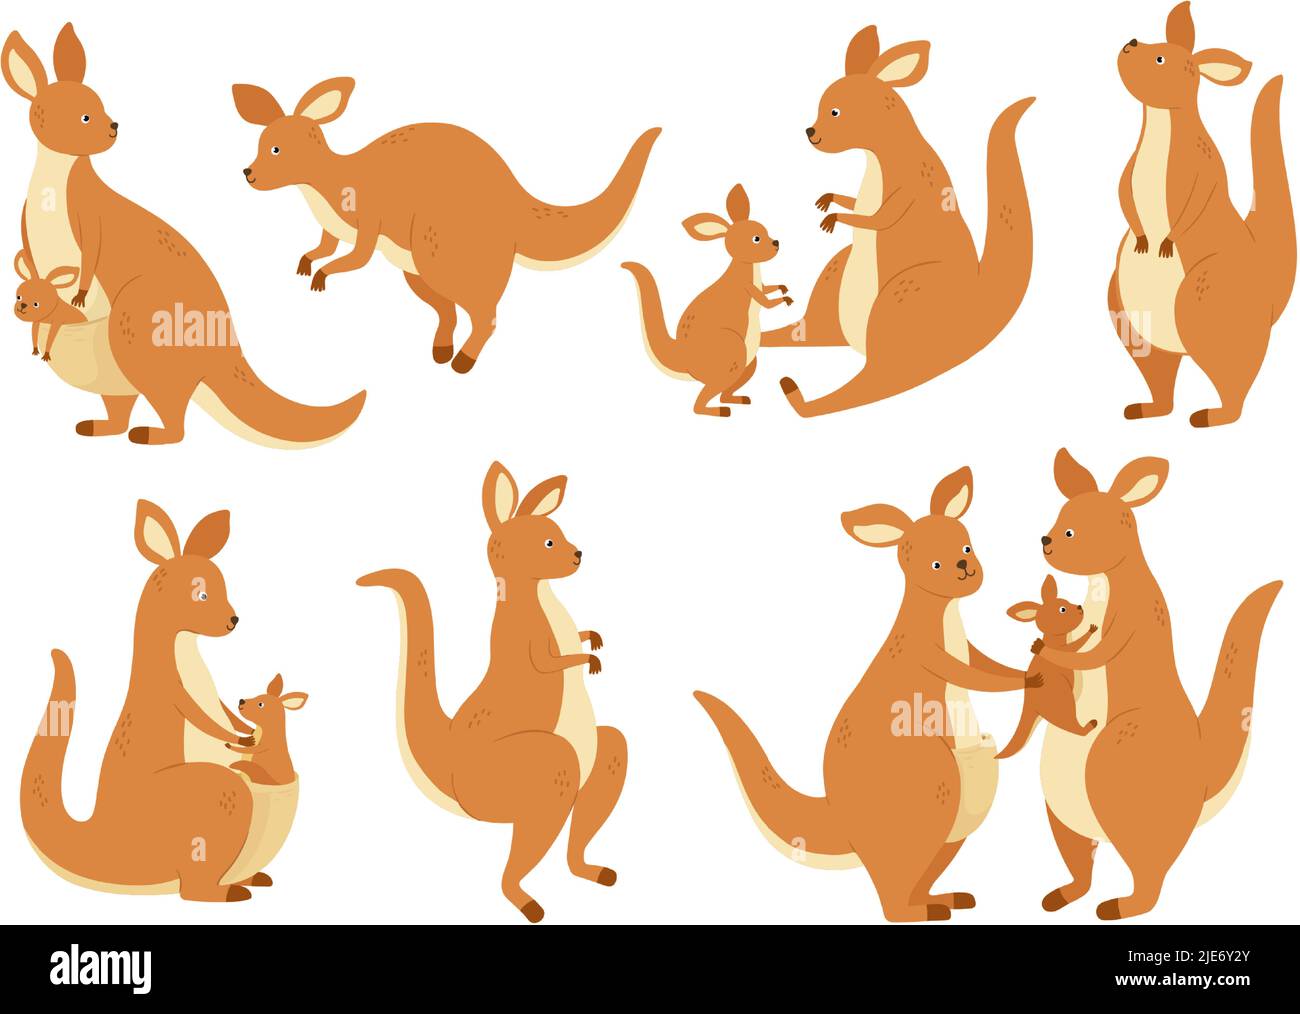 Famille kangourou de dessin animé. Mère wallaby avec bébé dans le sac, Australie animal marsupial et kangourous dans différentes poses scénario ensemble d'illustration Illustration de Vecteur